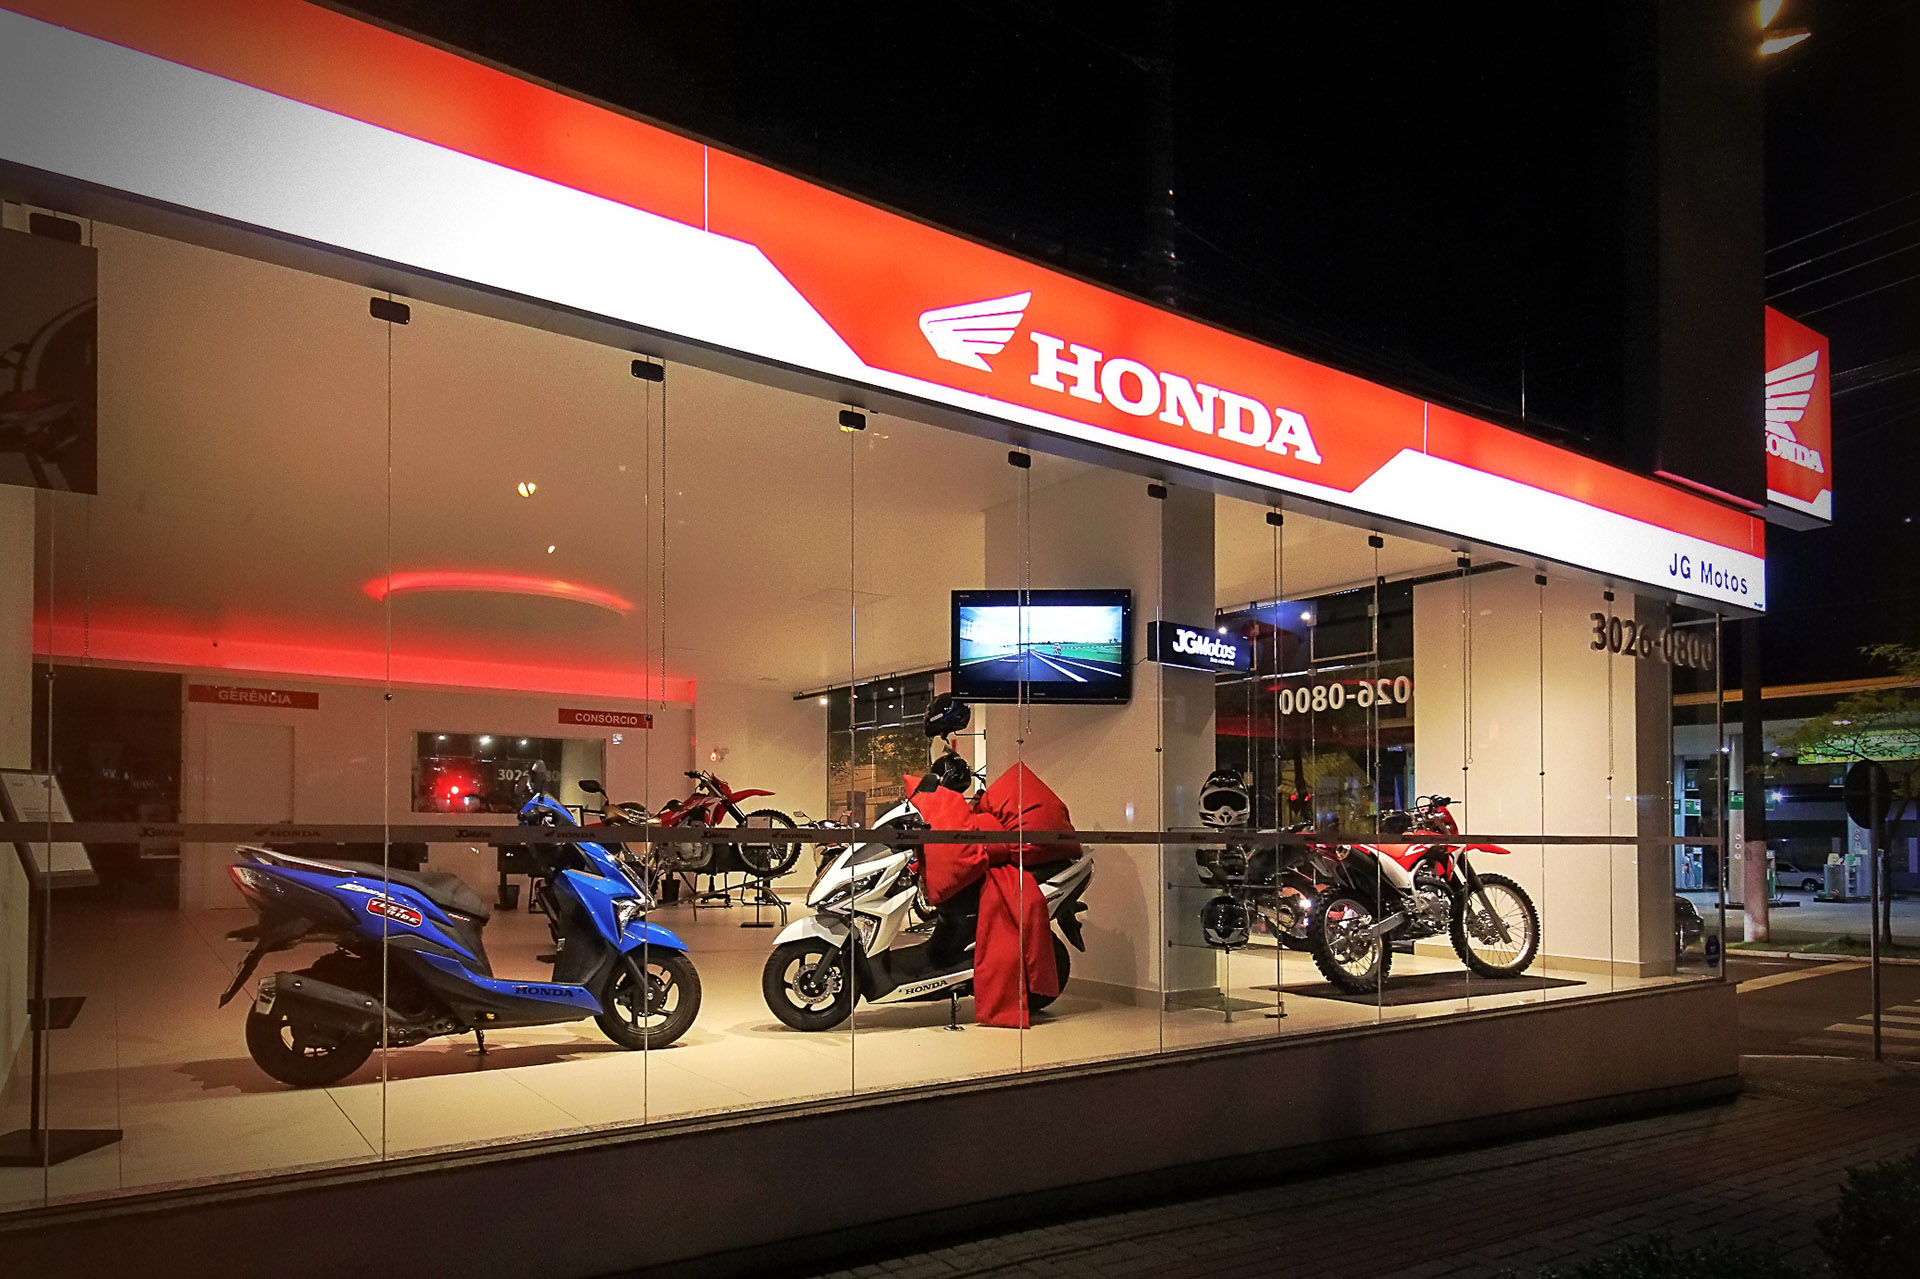 Adequação de sala comercial para revenda de motos Honda, com implantação de modelo padrão Honda de revisão rápida.